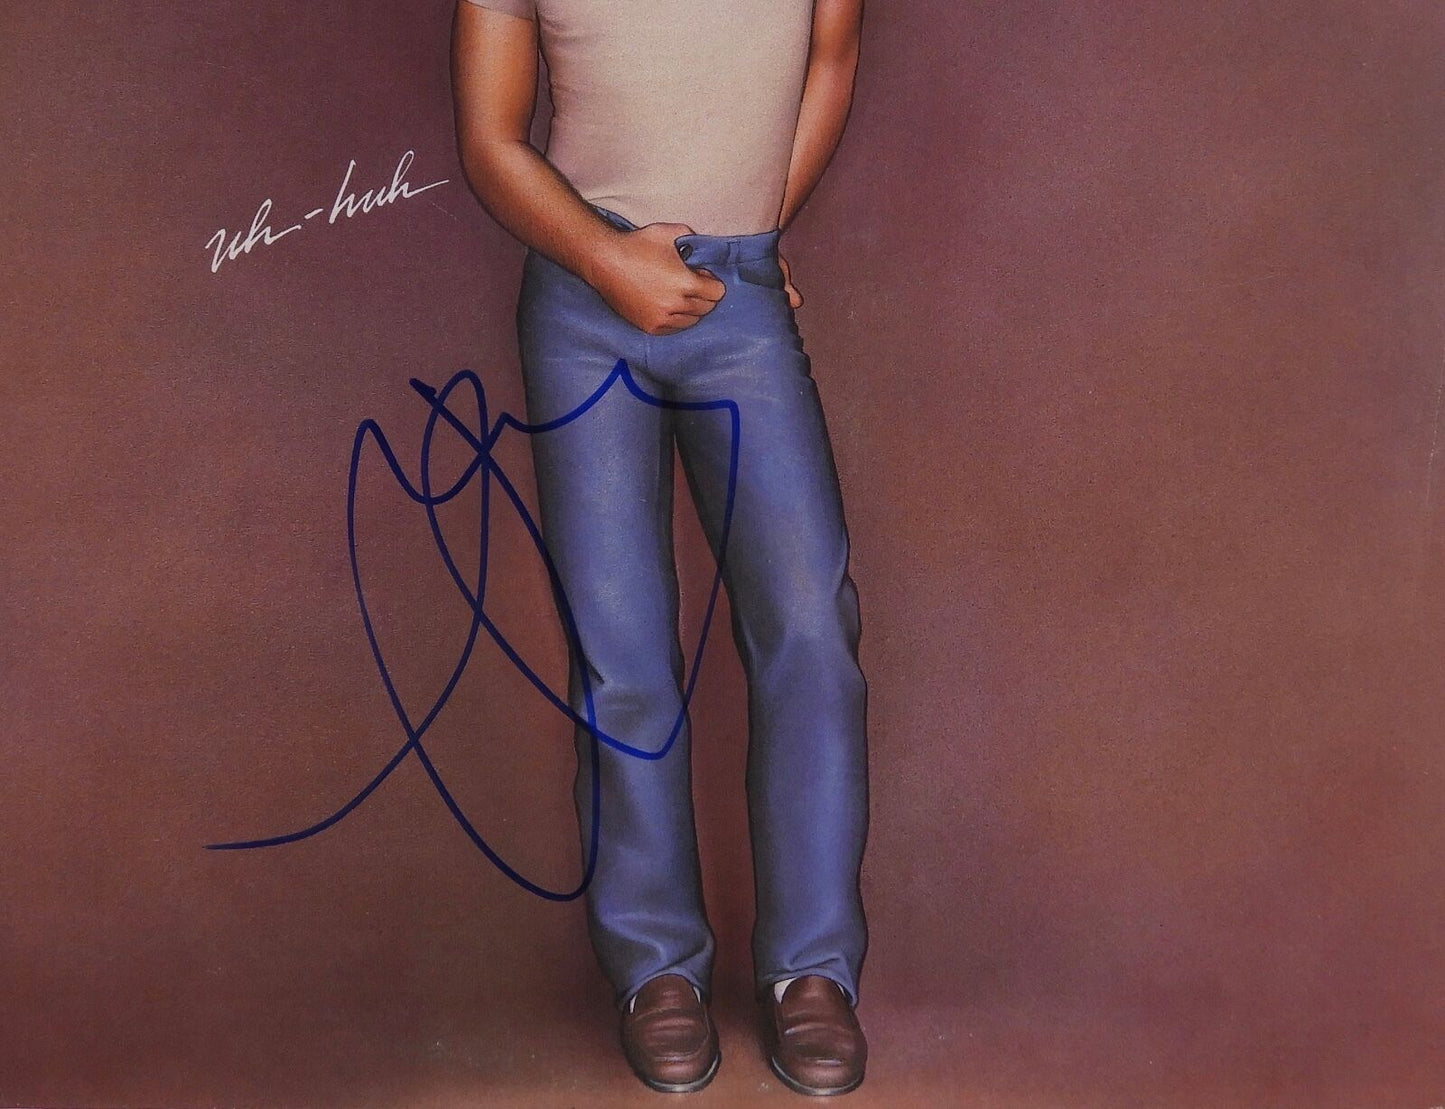 John Cougar Mellencamp Signed Autograph Uh - Huh JSA Album Vinyl Record